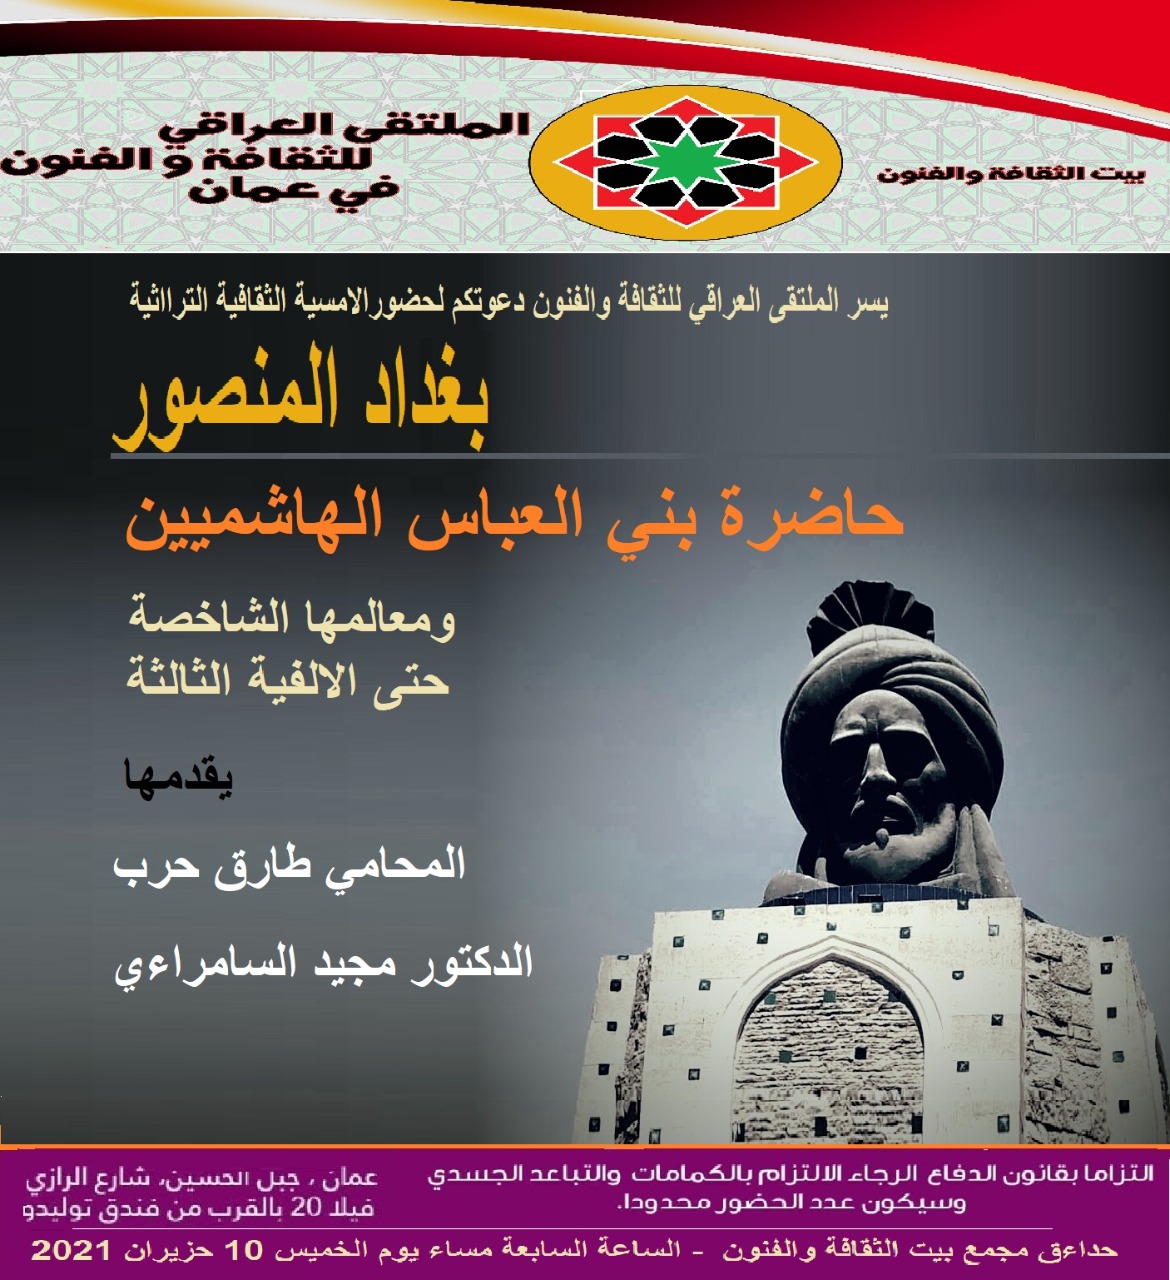 أمسية بعنوان “بغداد المنصور” للملتقى العراقي للثقافة والفنون في عمان